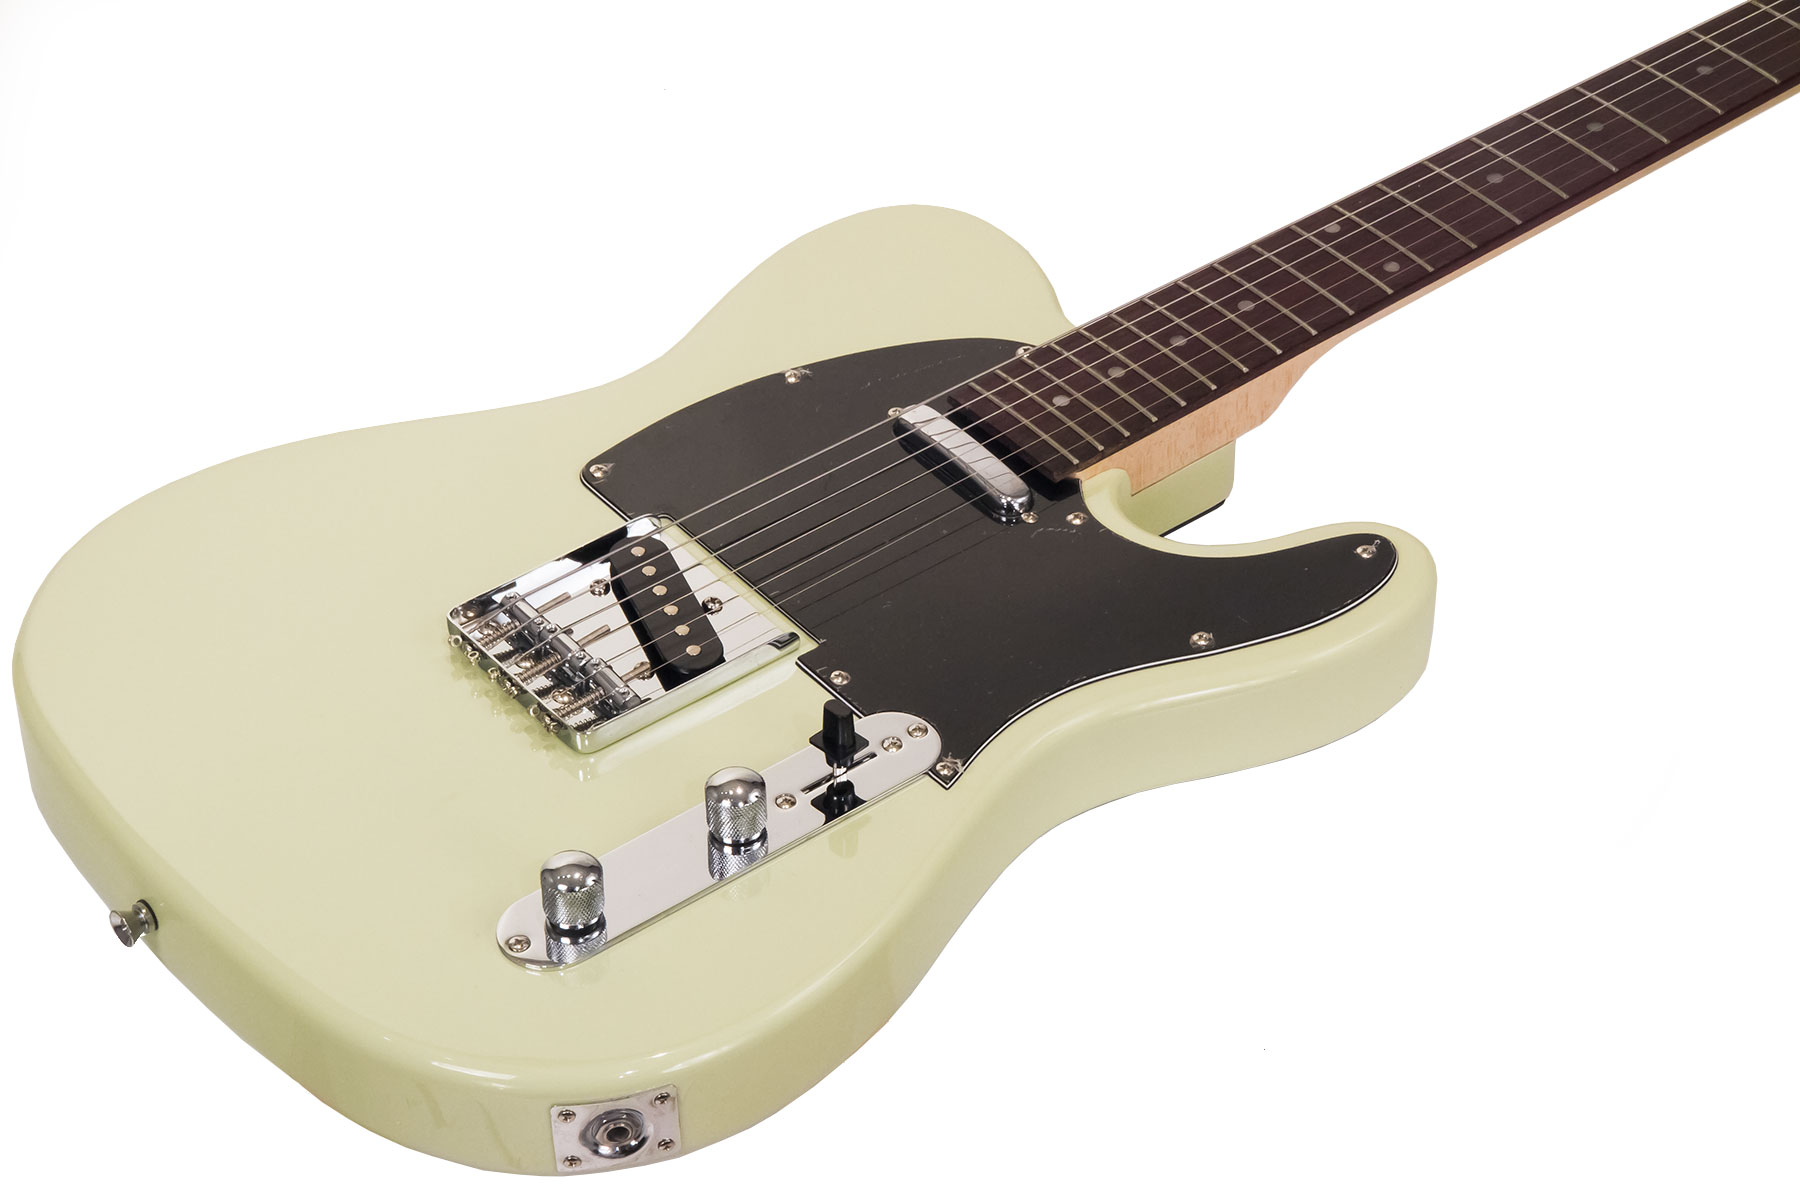 Eastone Tl70 Ss Ht Rw - Ivory - Guitarra eléctrica con forma de tel - Variation 1